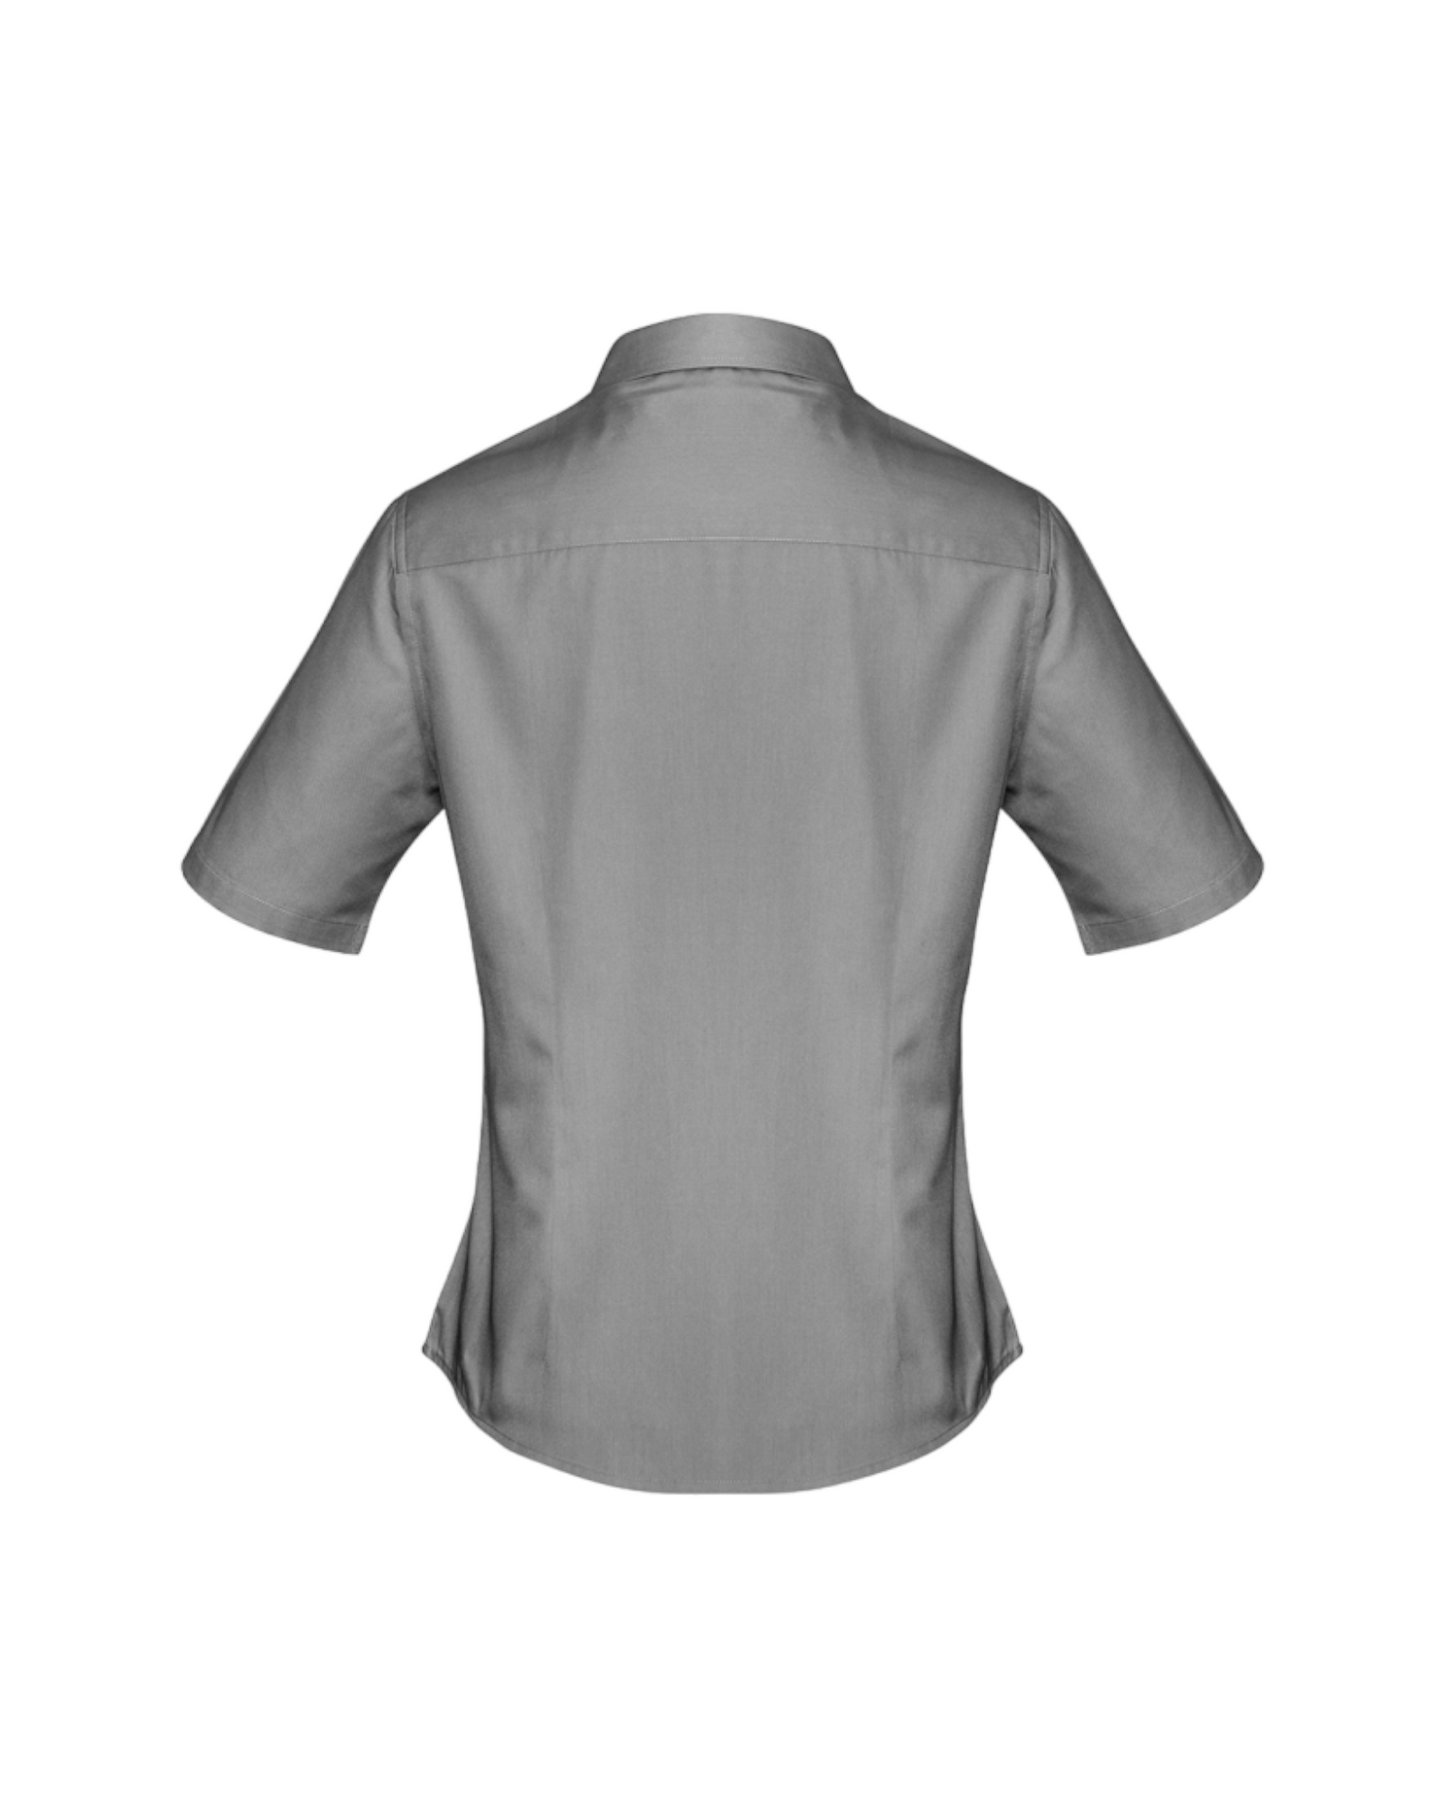 Ladies Dalton Short Sleeve Shirt Fashion Biz #S522LS